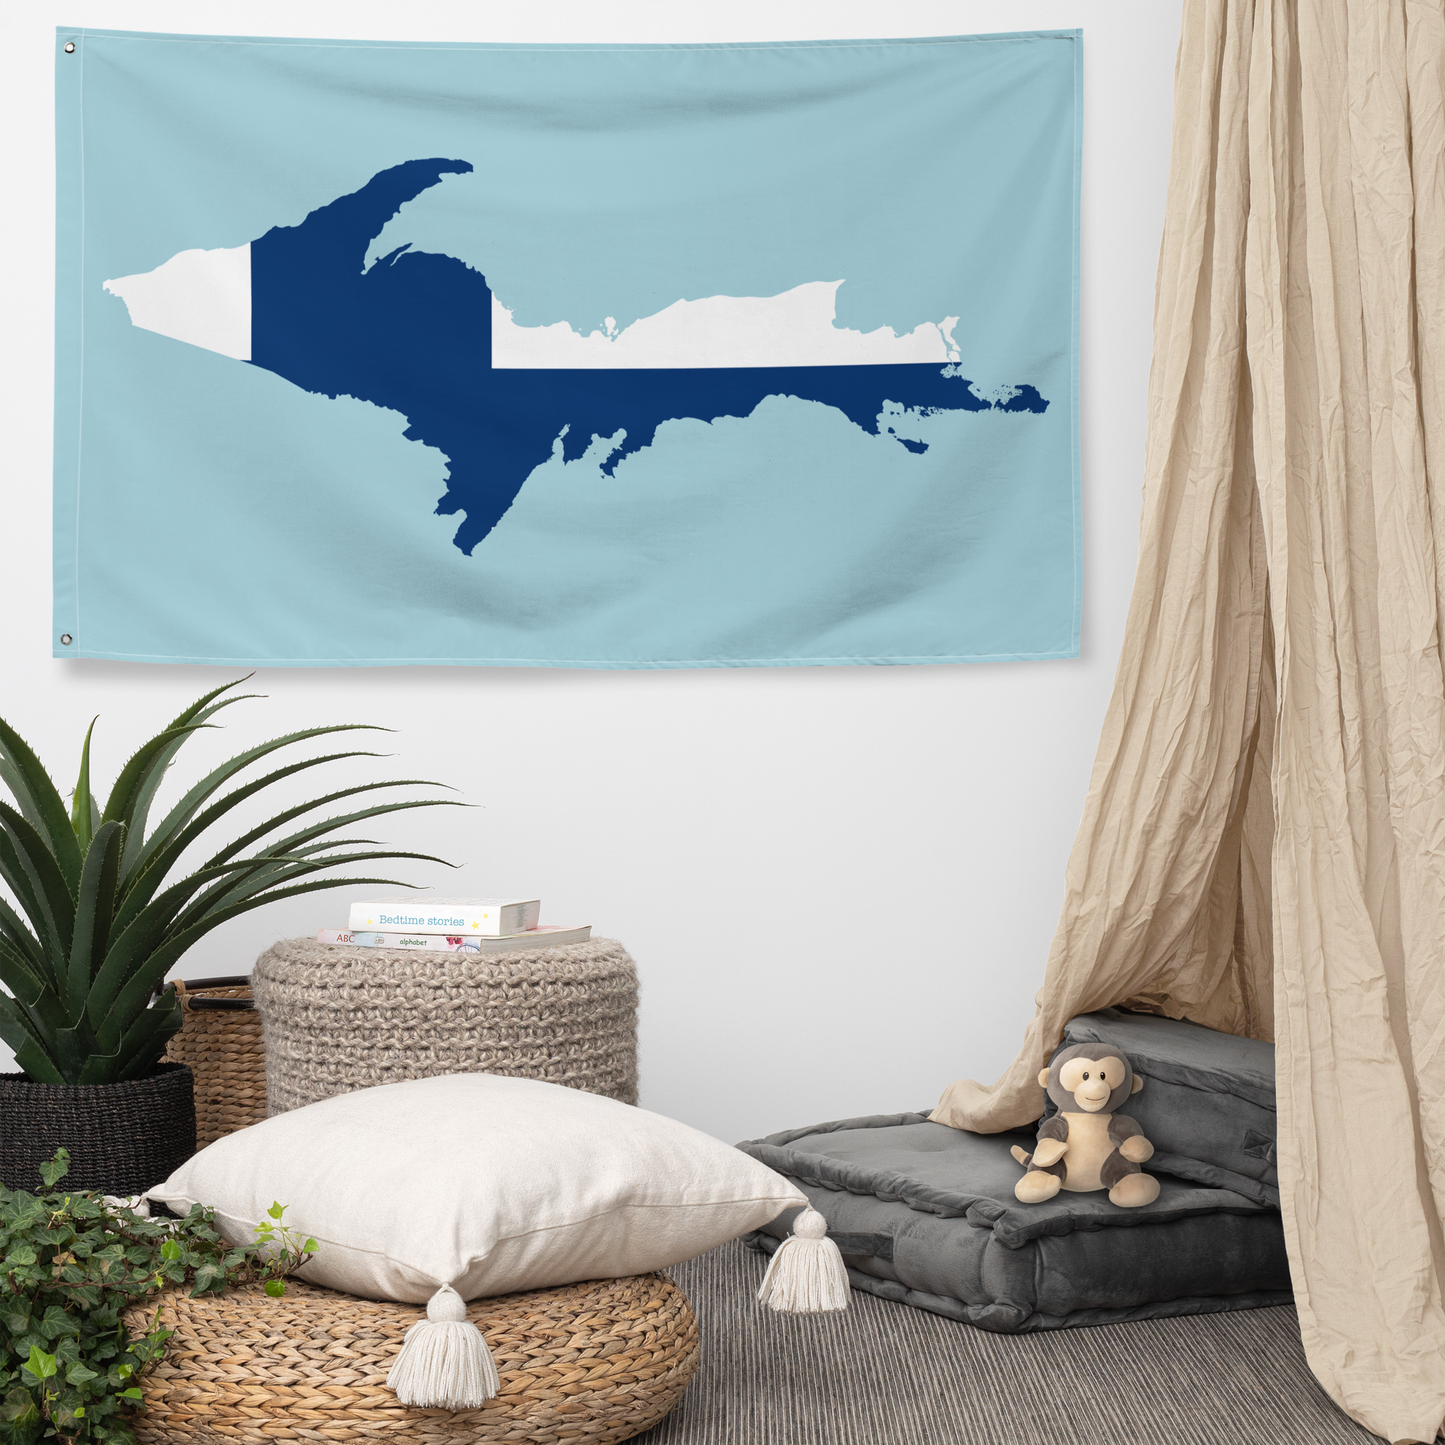 Michigan Upper Peninsula Wall Flag (w/ UP Finland Flag) | '58 Caddie Blue